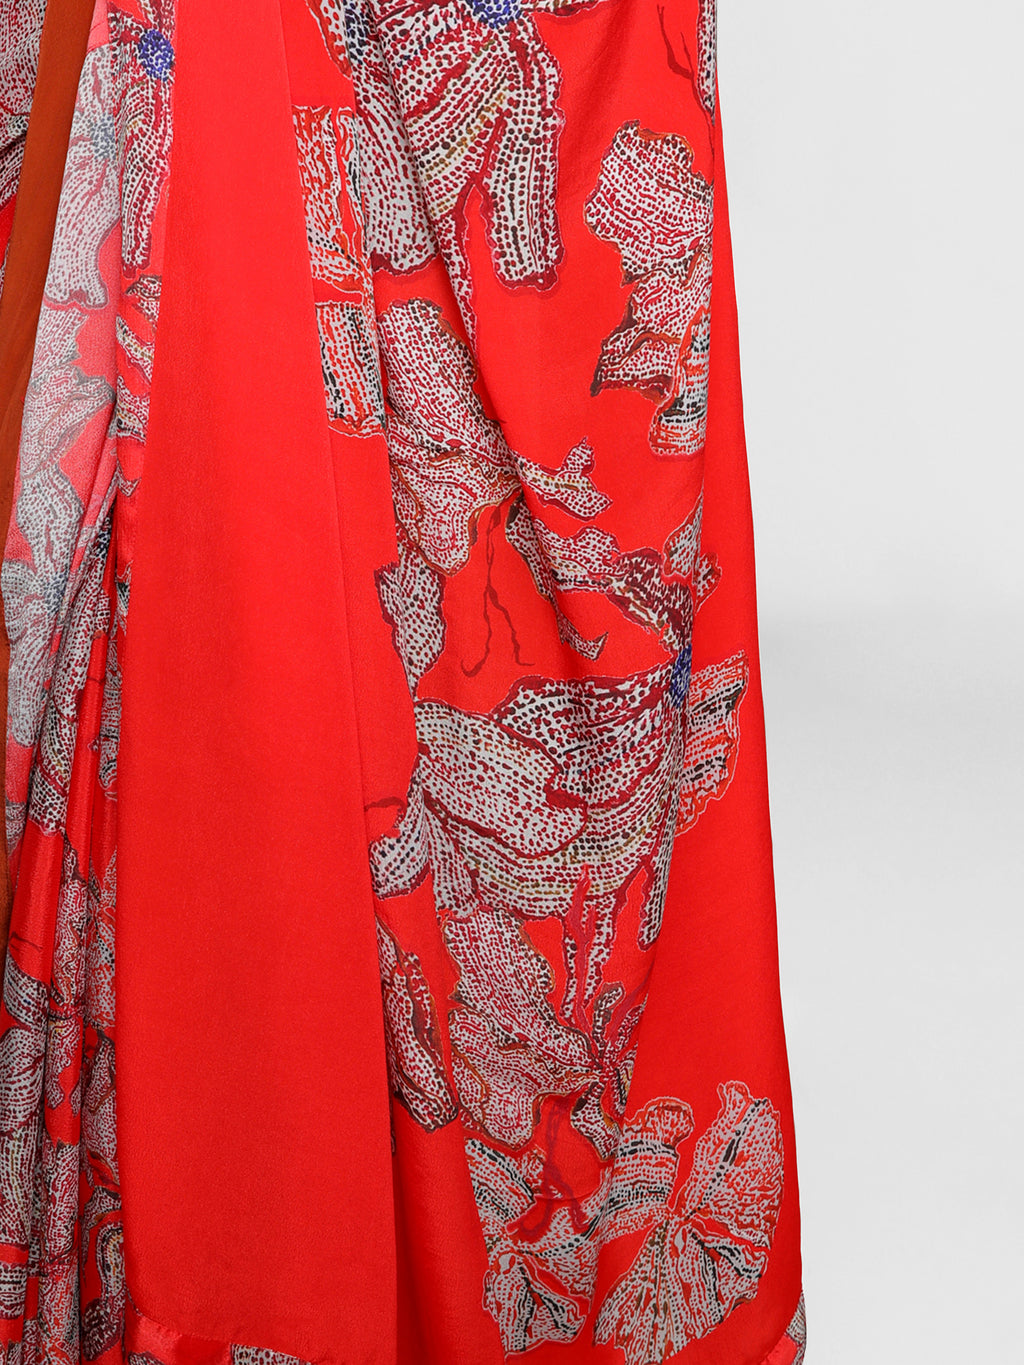 Masaba Red Wildflowers Sari Blouse Piece – Saris and Things